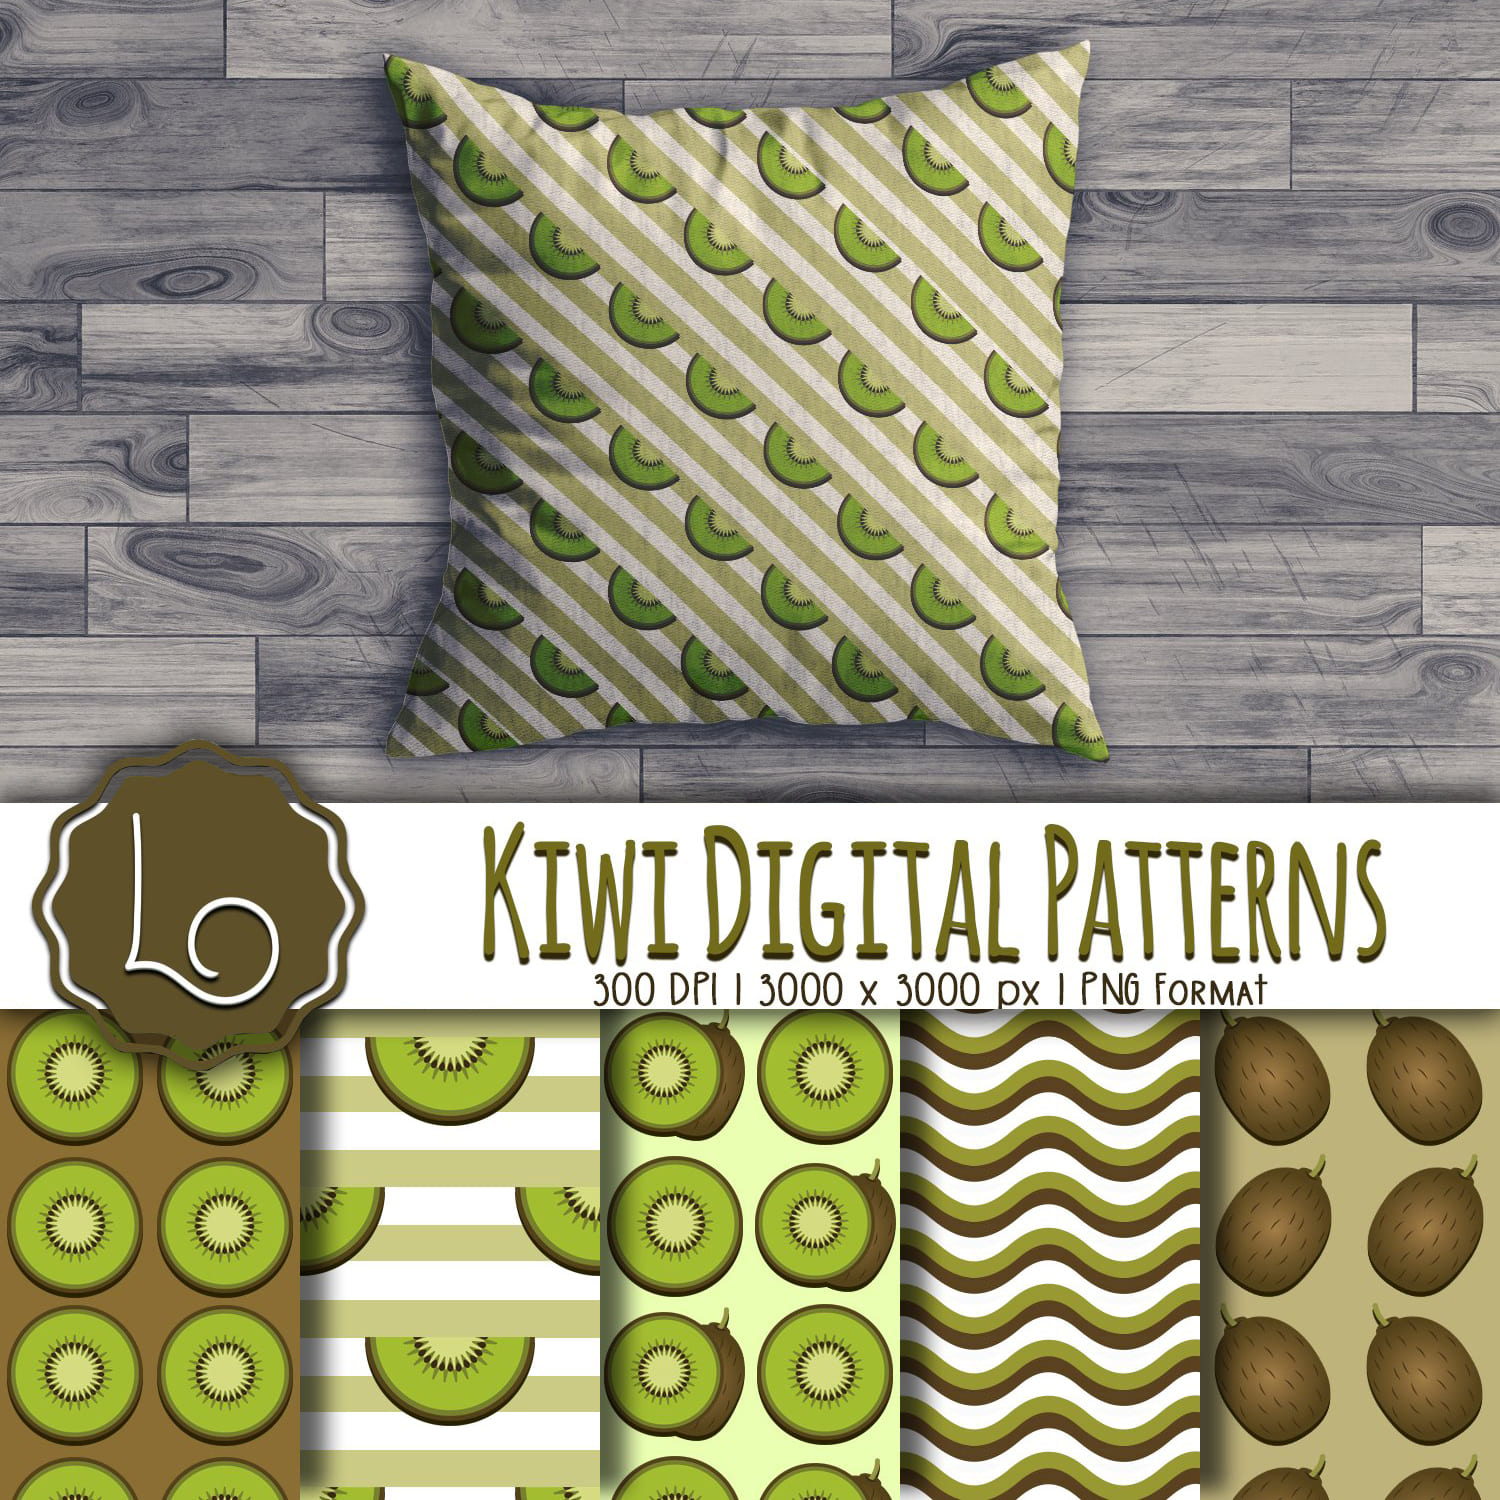 Kiwi Digital Patterns.